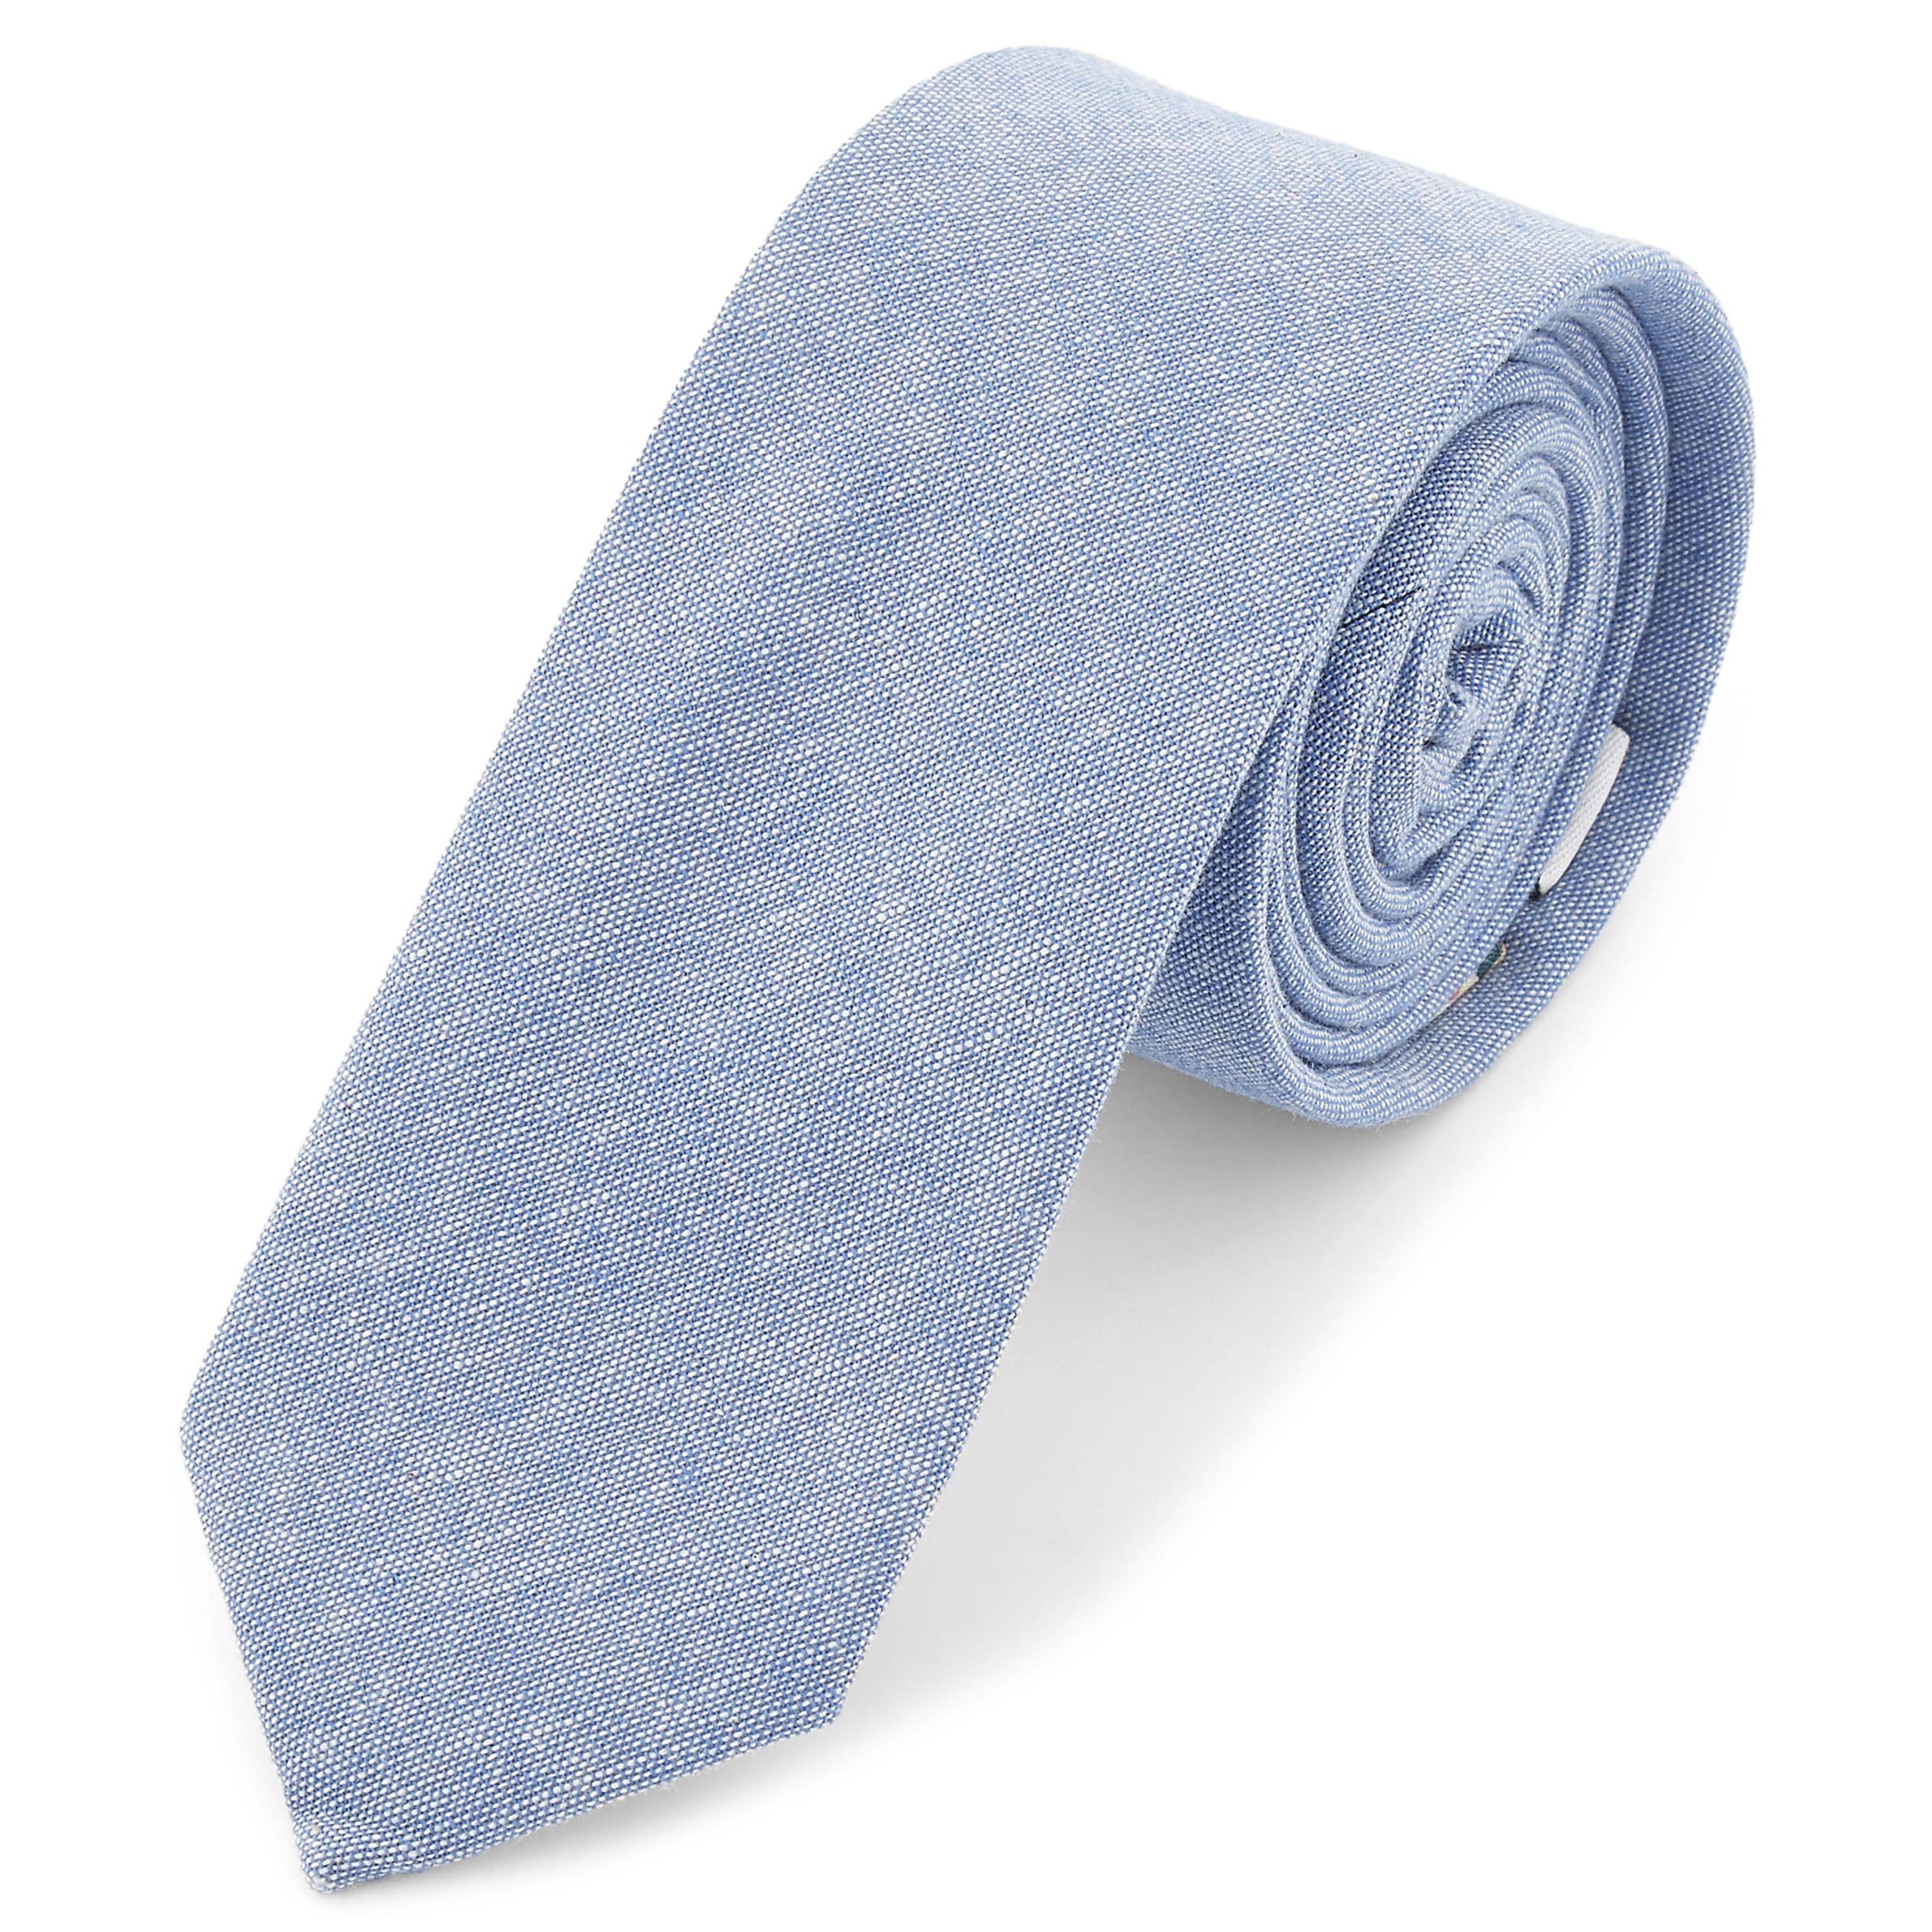 Jasnobłękitny krawat